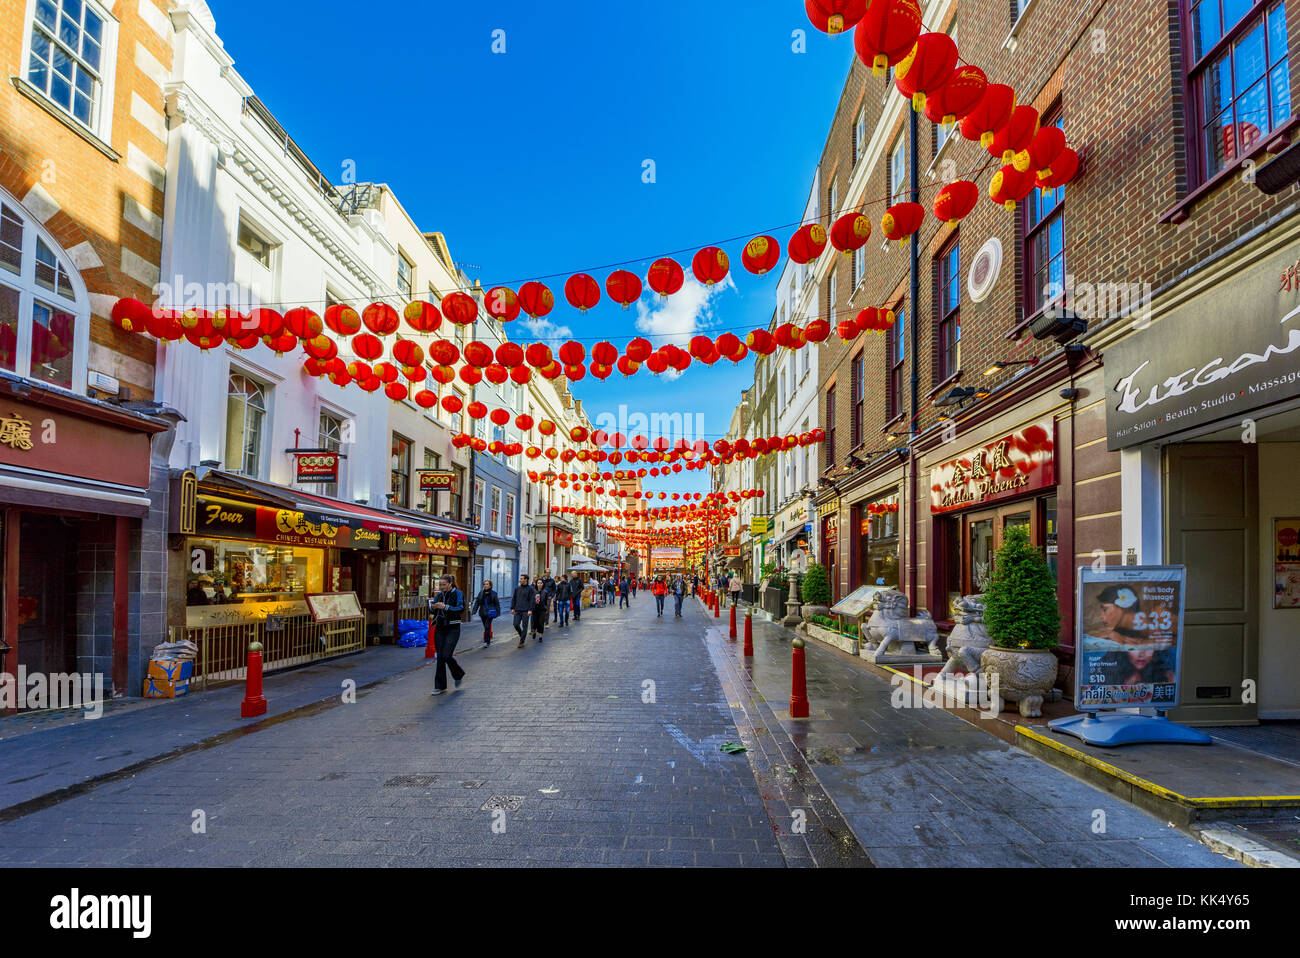 Londres, Royaume-Uni - 06 octobre : ce Gerrard Street dans le quartier chinois, c'est la rue principale et le centre de Chinatown qui a de nombreux restaurants sur Banque D'Images